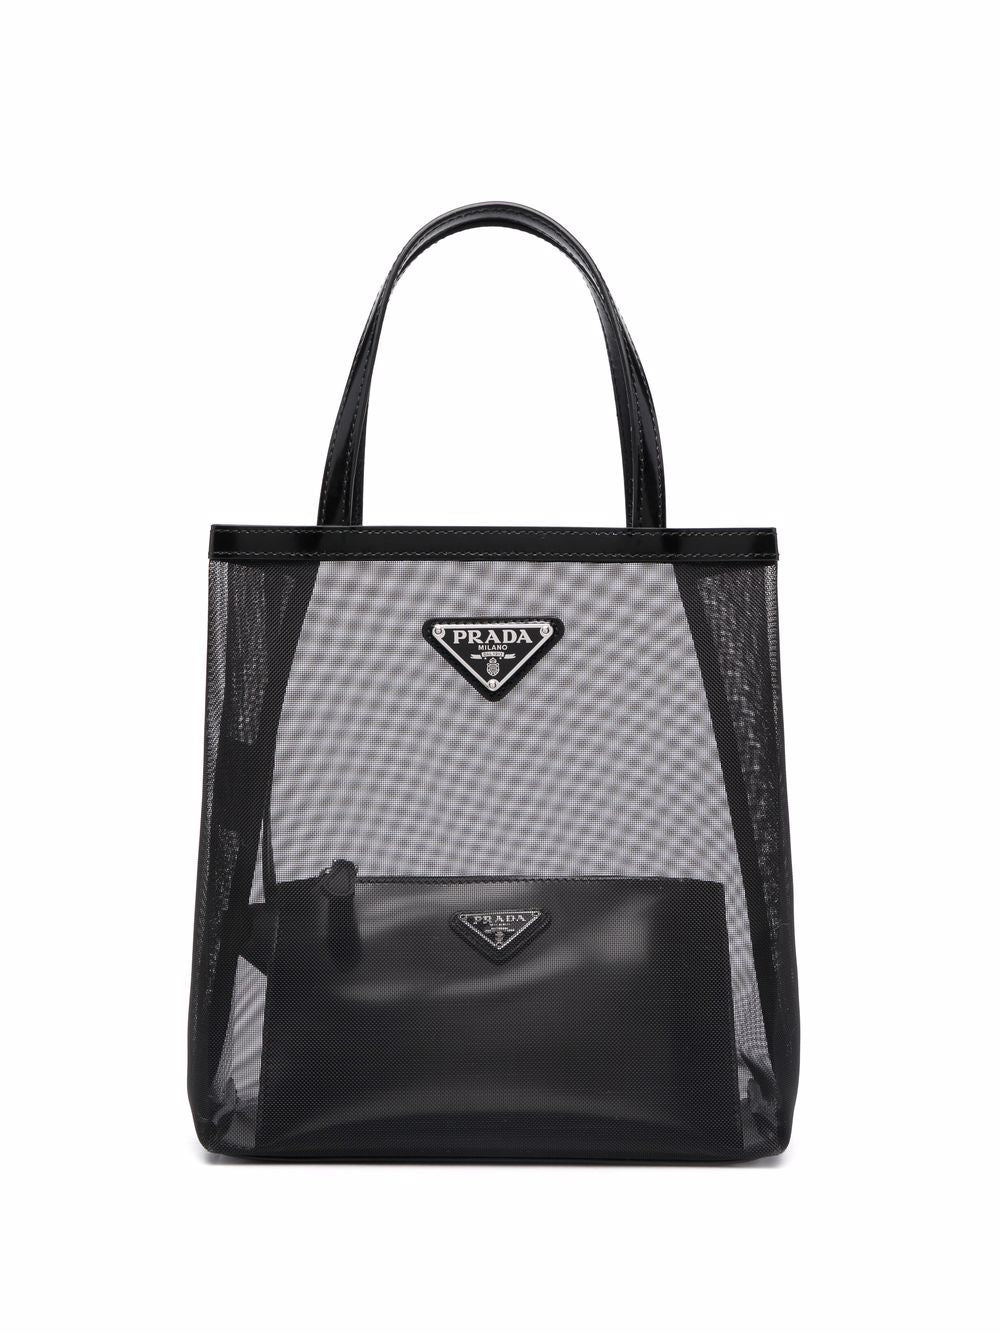 Prada Mesh Tote Bag Black Mini | Fashion Clinic